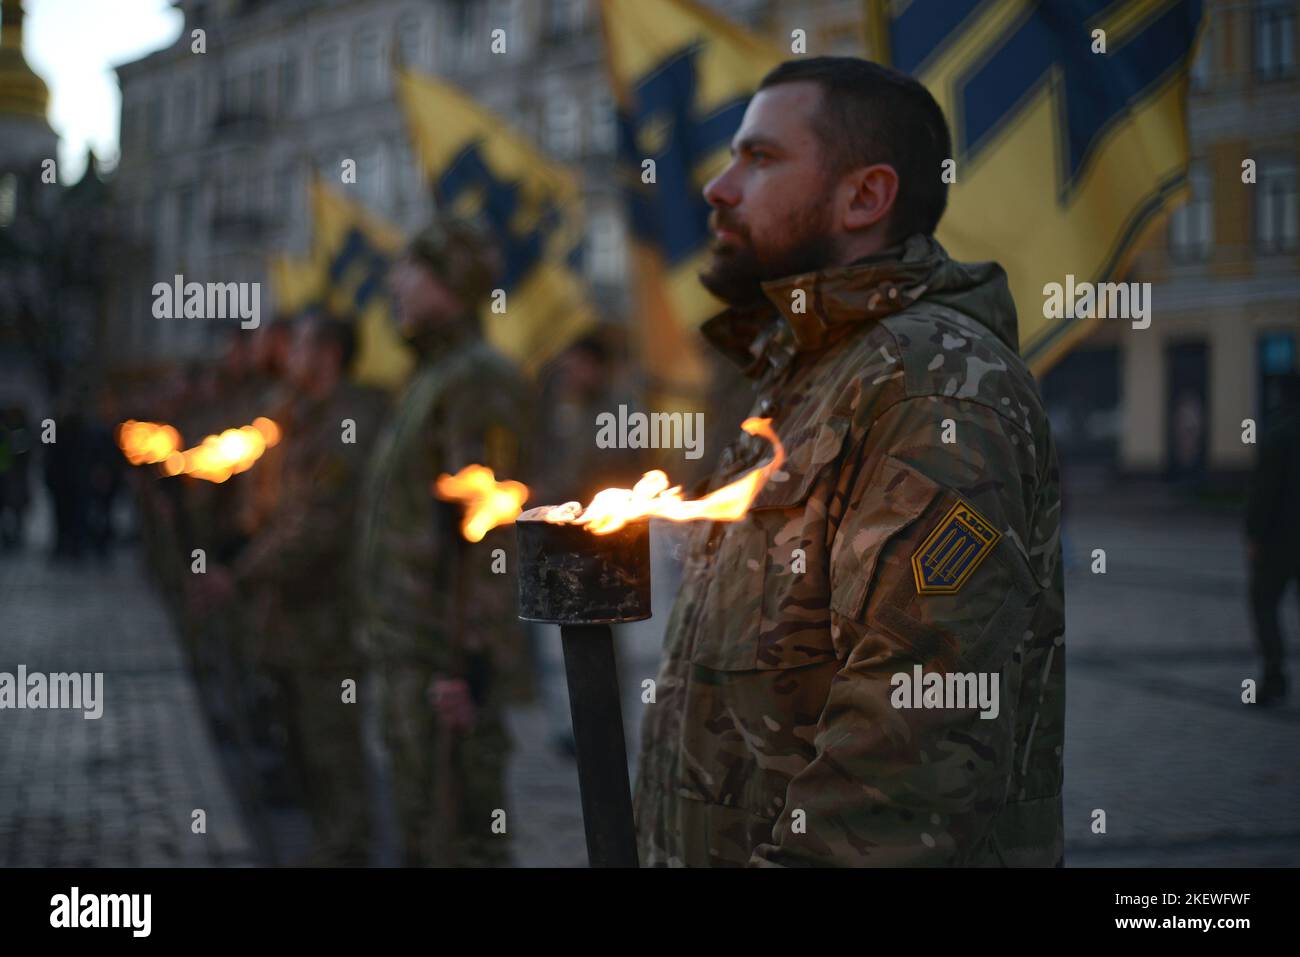 KIEV, UCRAINA - 13 NOVEMBRE 2022 - i soldati del reggimento di Azov detengono torce brucianti per commemorare i loro fratelli caduti in armi durante il mistero del reggimento celeste di Azov in piazza Sofiyska, Kyiv, capitale dell'Ucraina. Foto Stock